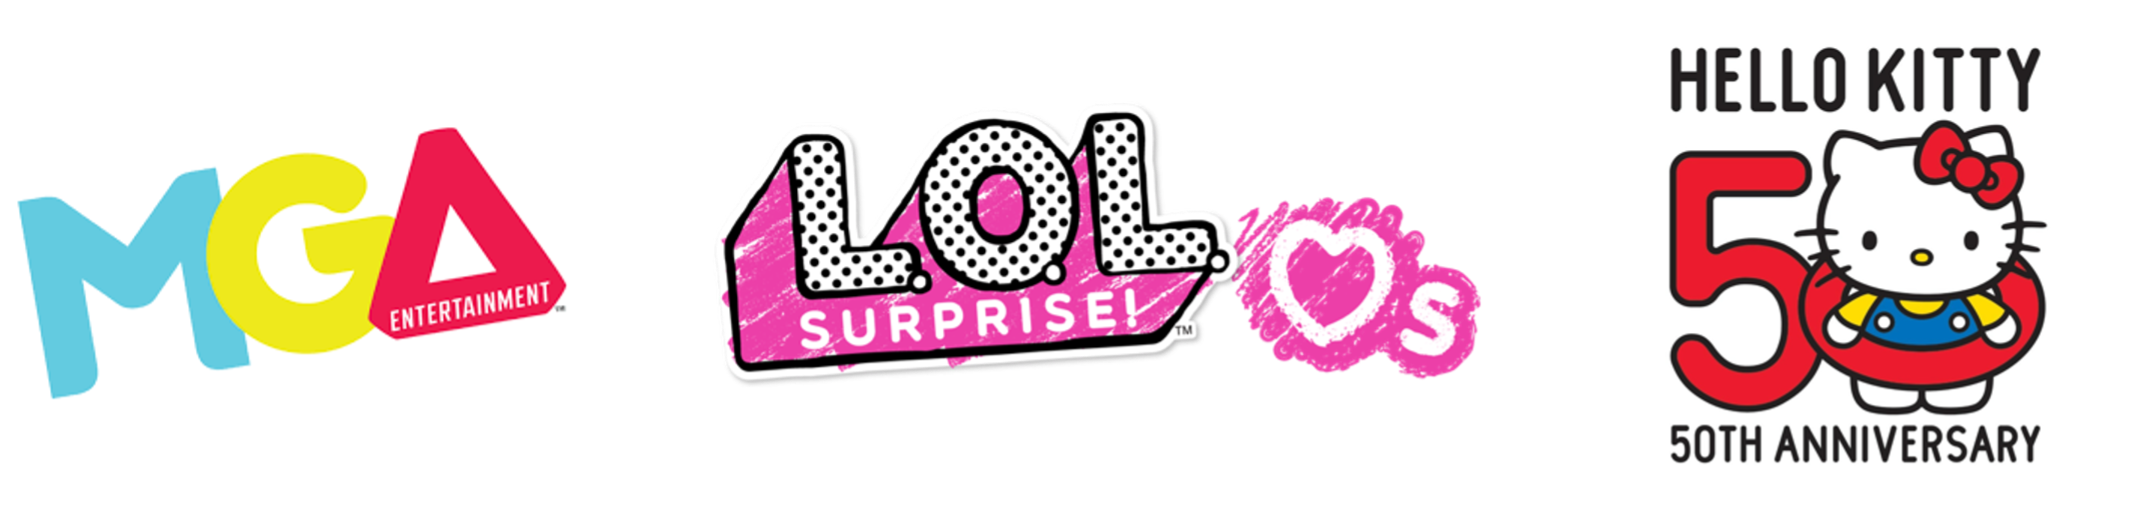 L.O.L. Surprise!™ Celebrates the 50th Anniversary of Hello